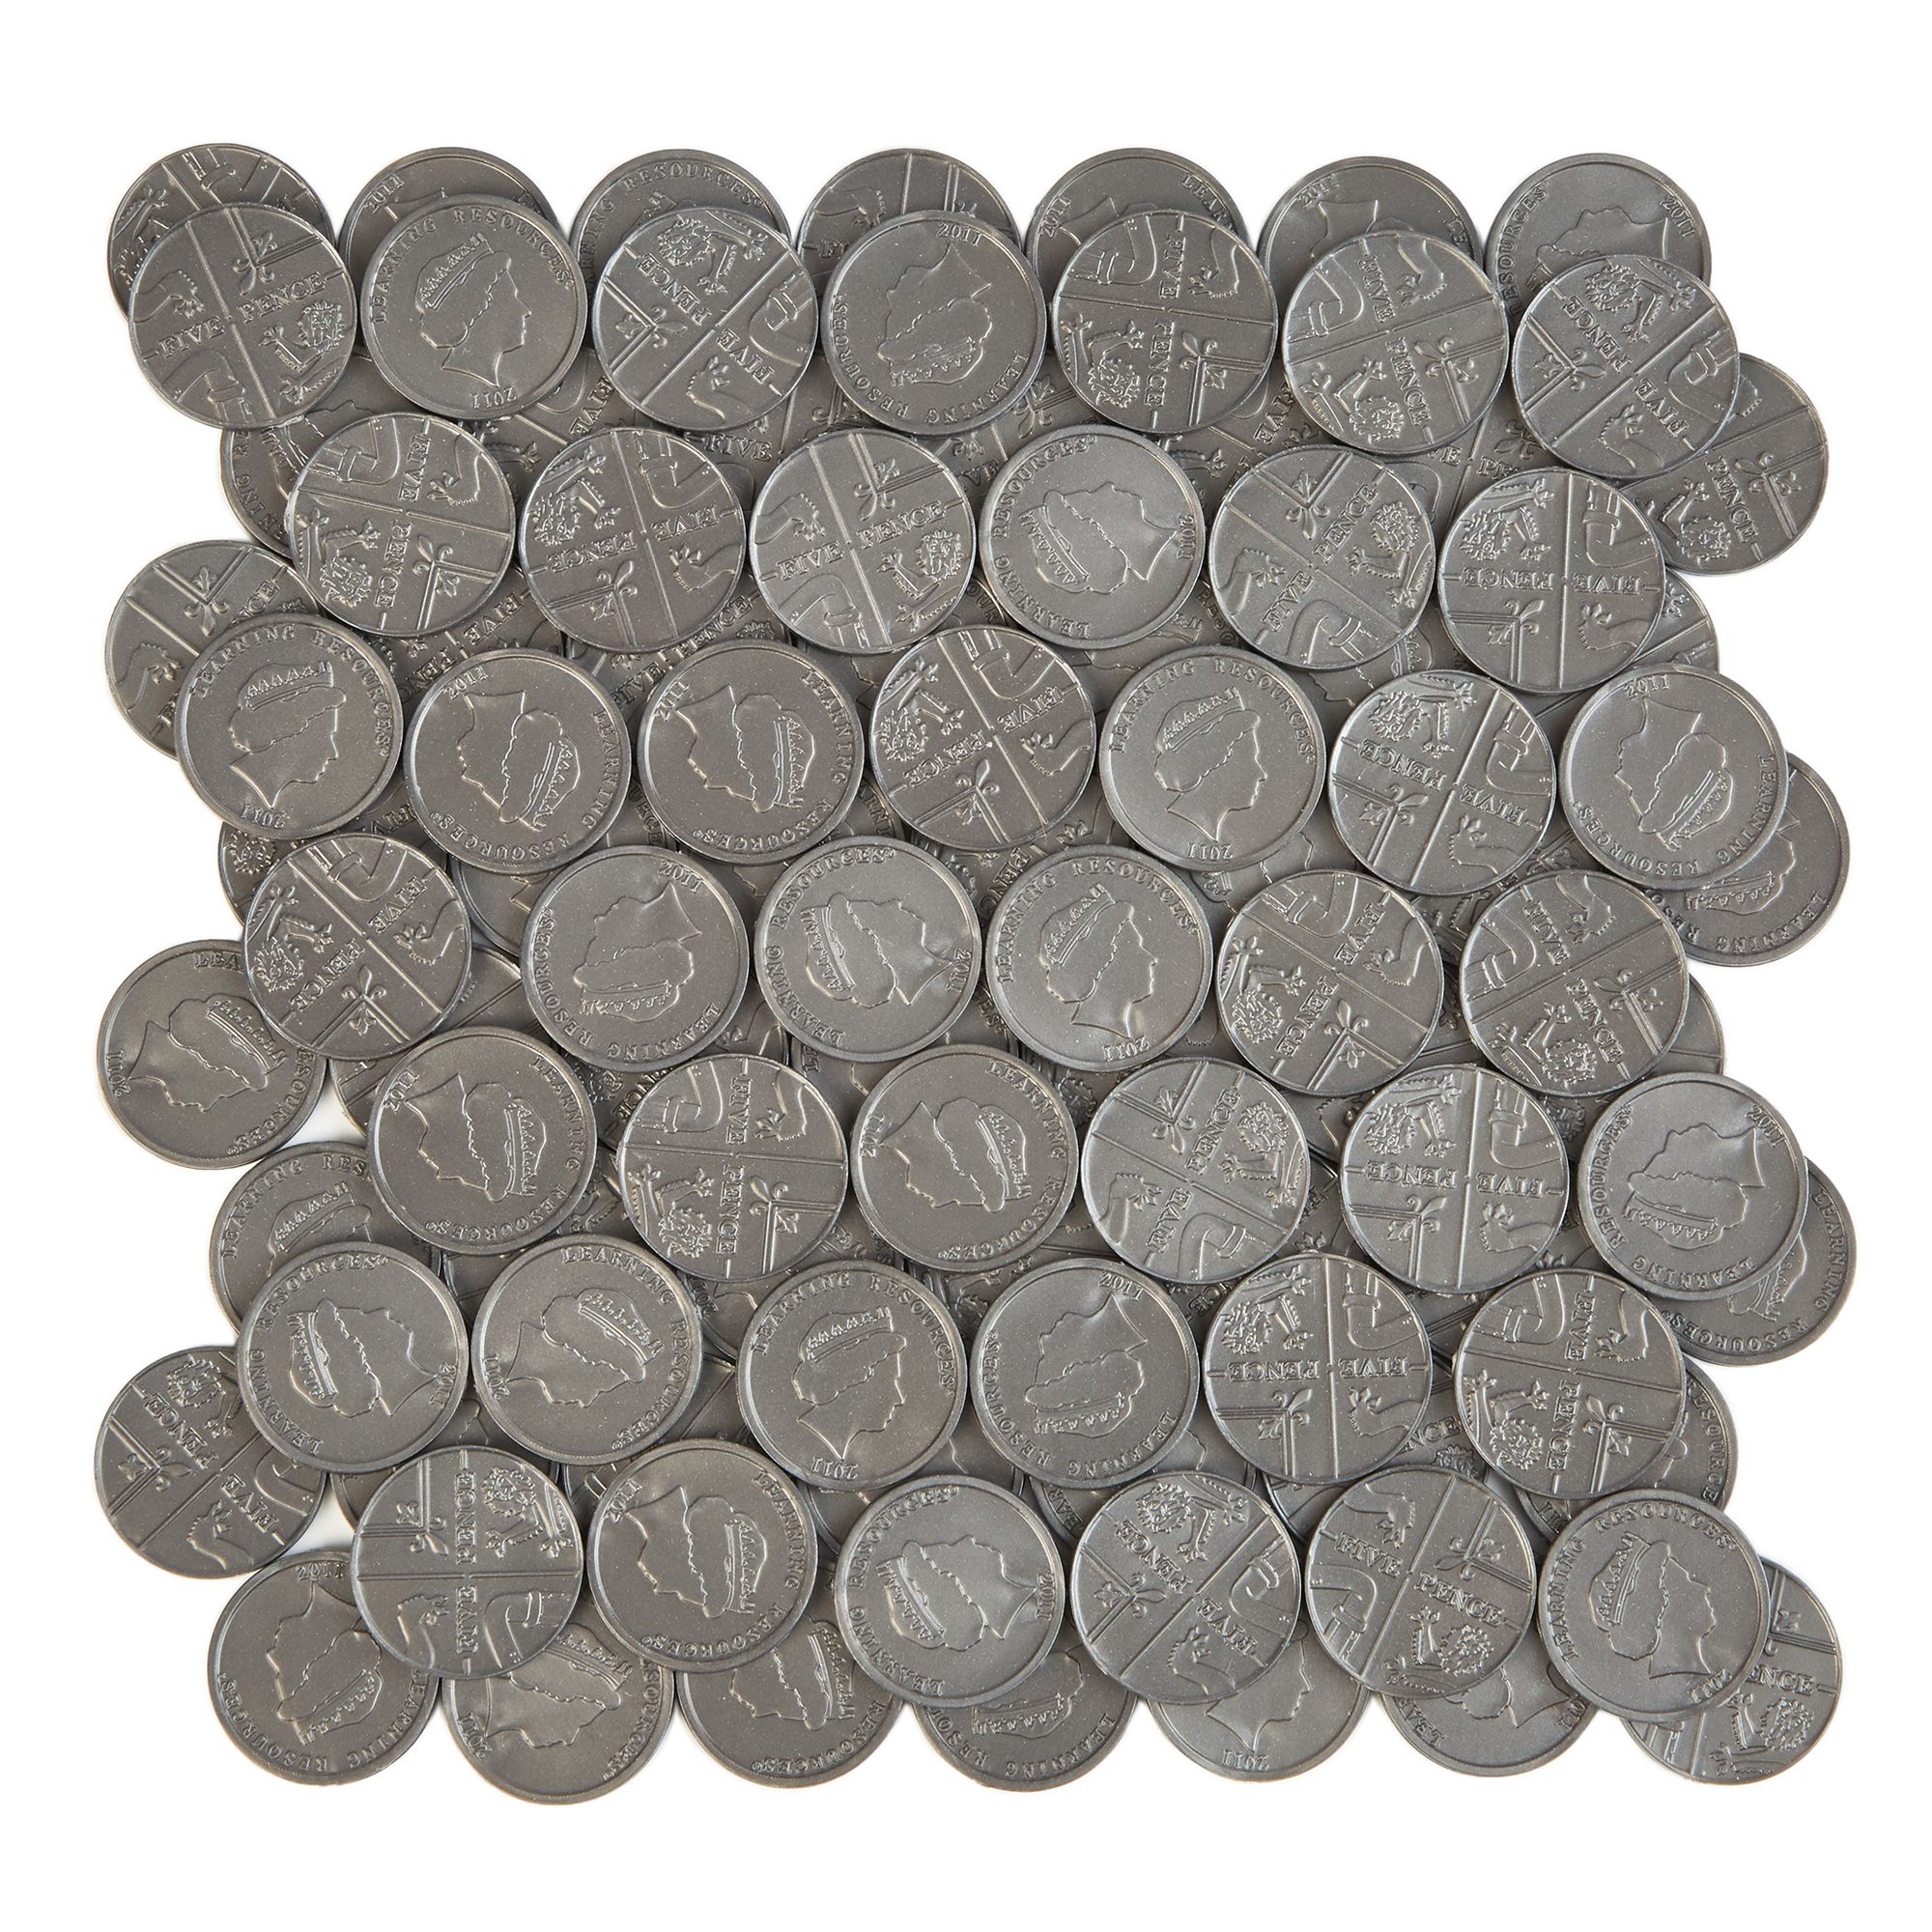 5p Coins Pk100